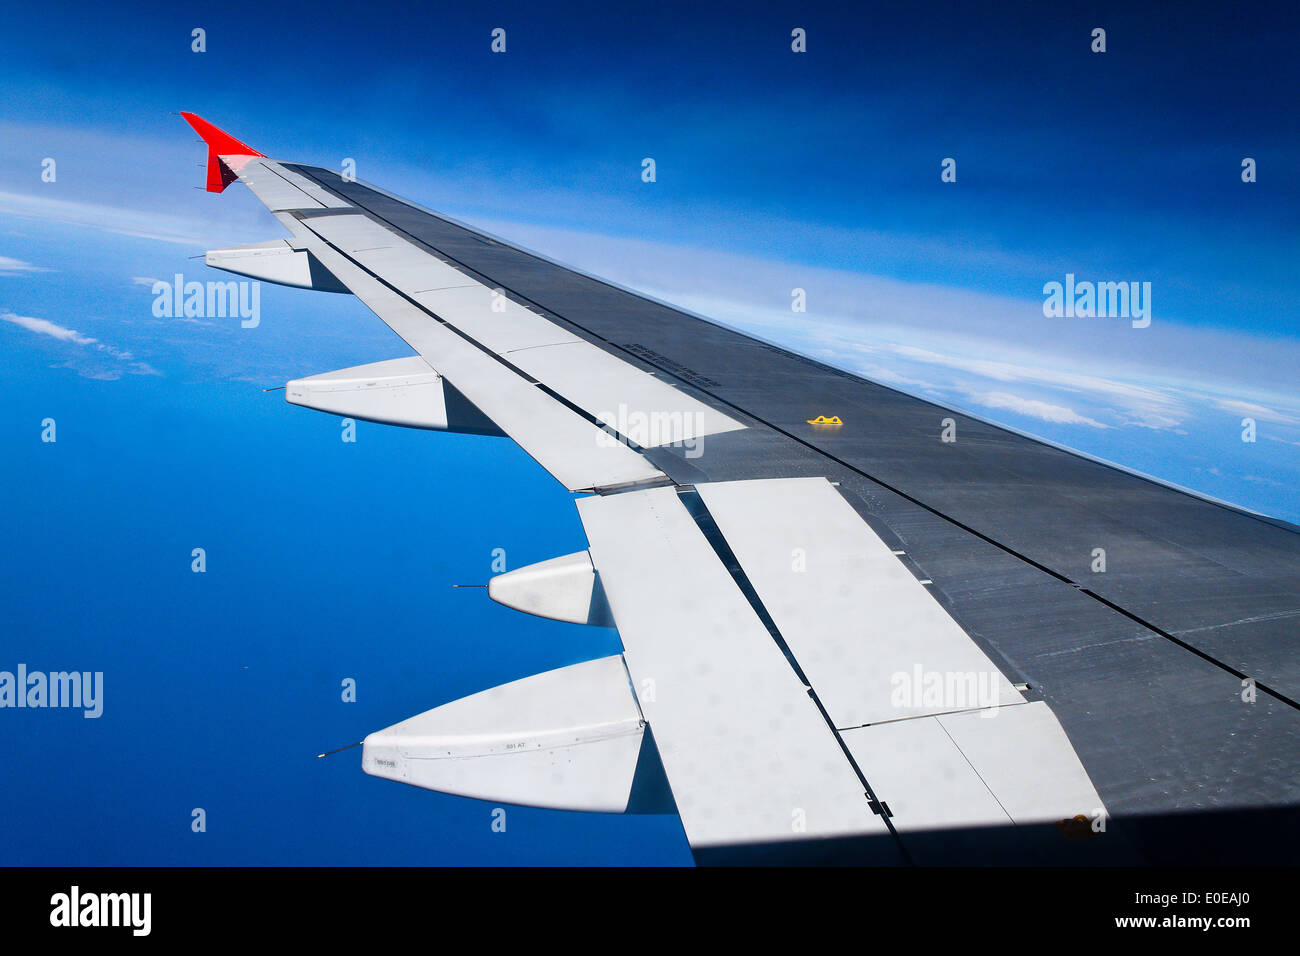 Un'ala di un passeggero di aereo, Eine Tragflaeche eines Flugzeuges Passagier Foto Stock